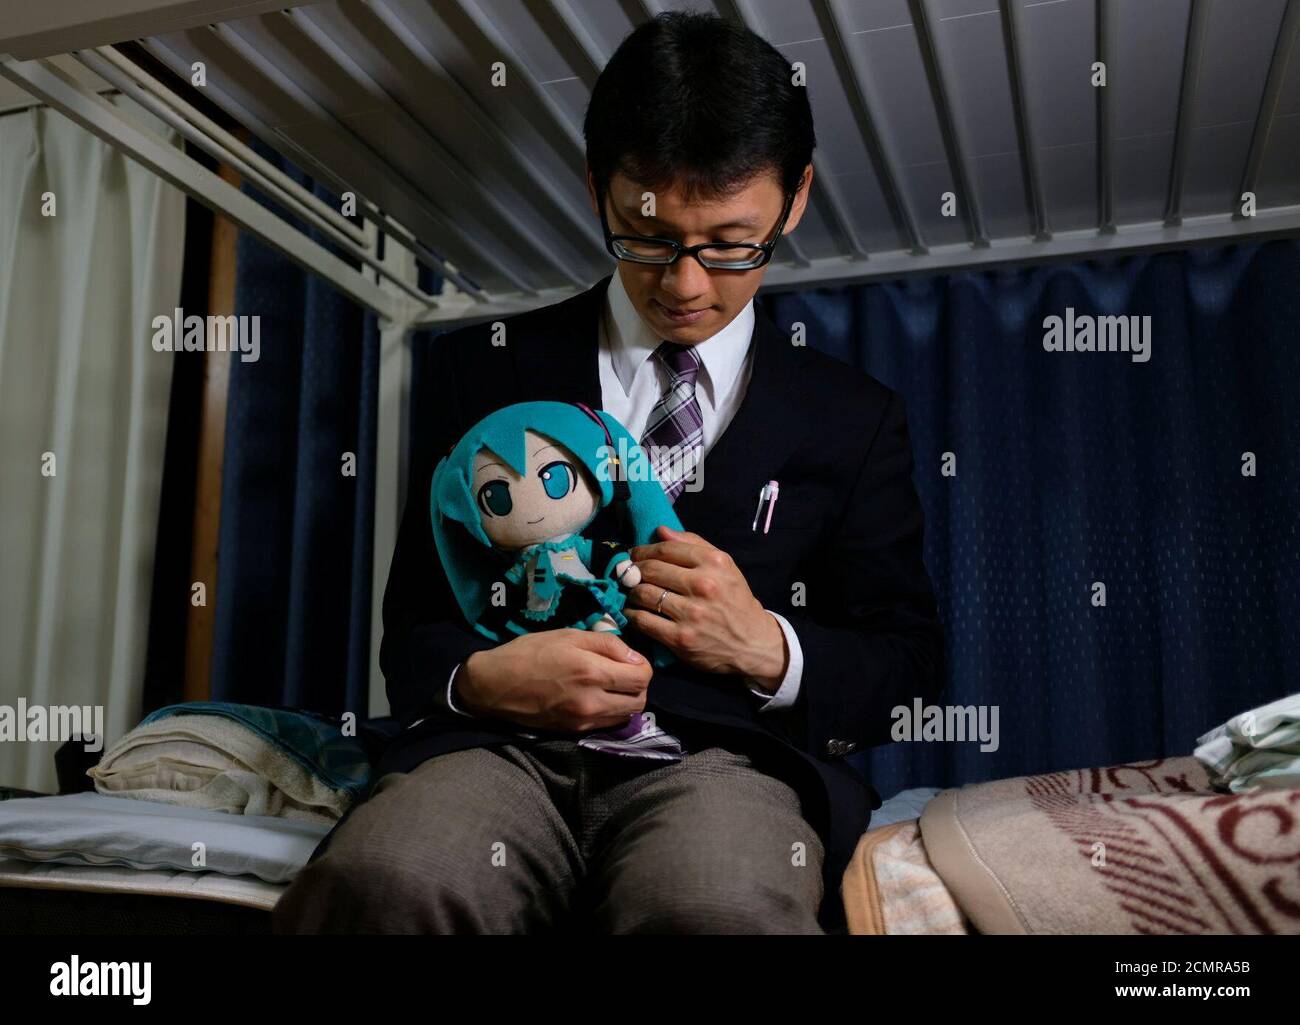 Akihiko Kondo, 35 ans, pose pour une photo avec une poupée modelée d'après  la chanteuse de réalité virtuelle Hatsune Miku, portant leurs anneaux de  mariage, dans son appartement après l'avoir épousé à